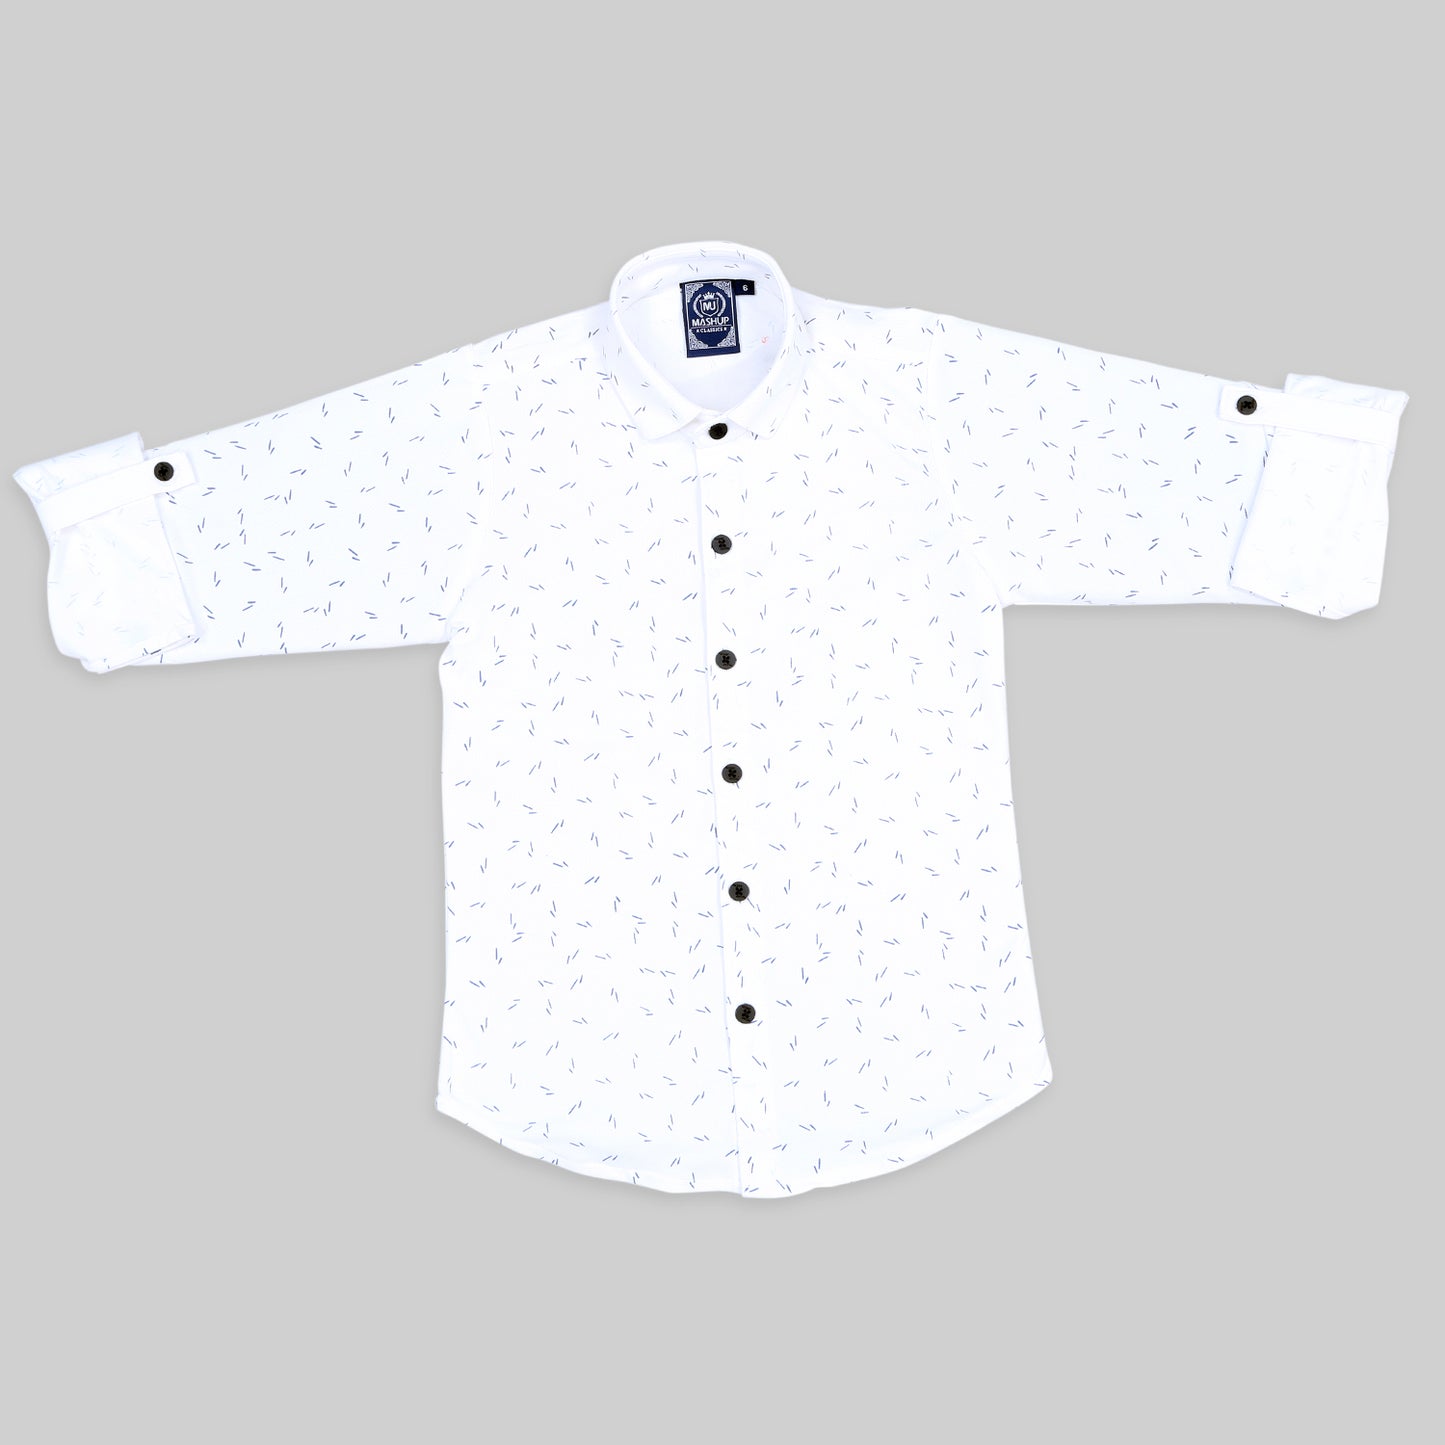 MashUp Fashionable cotton knit shrug/waistcoat and superior cotton shirt